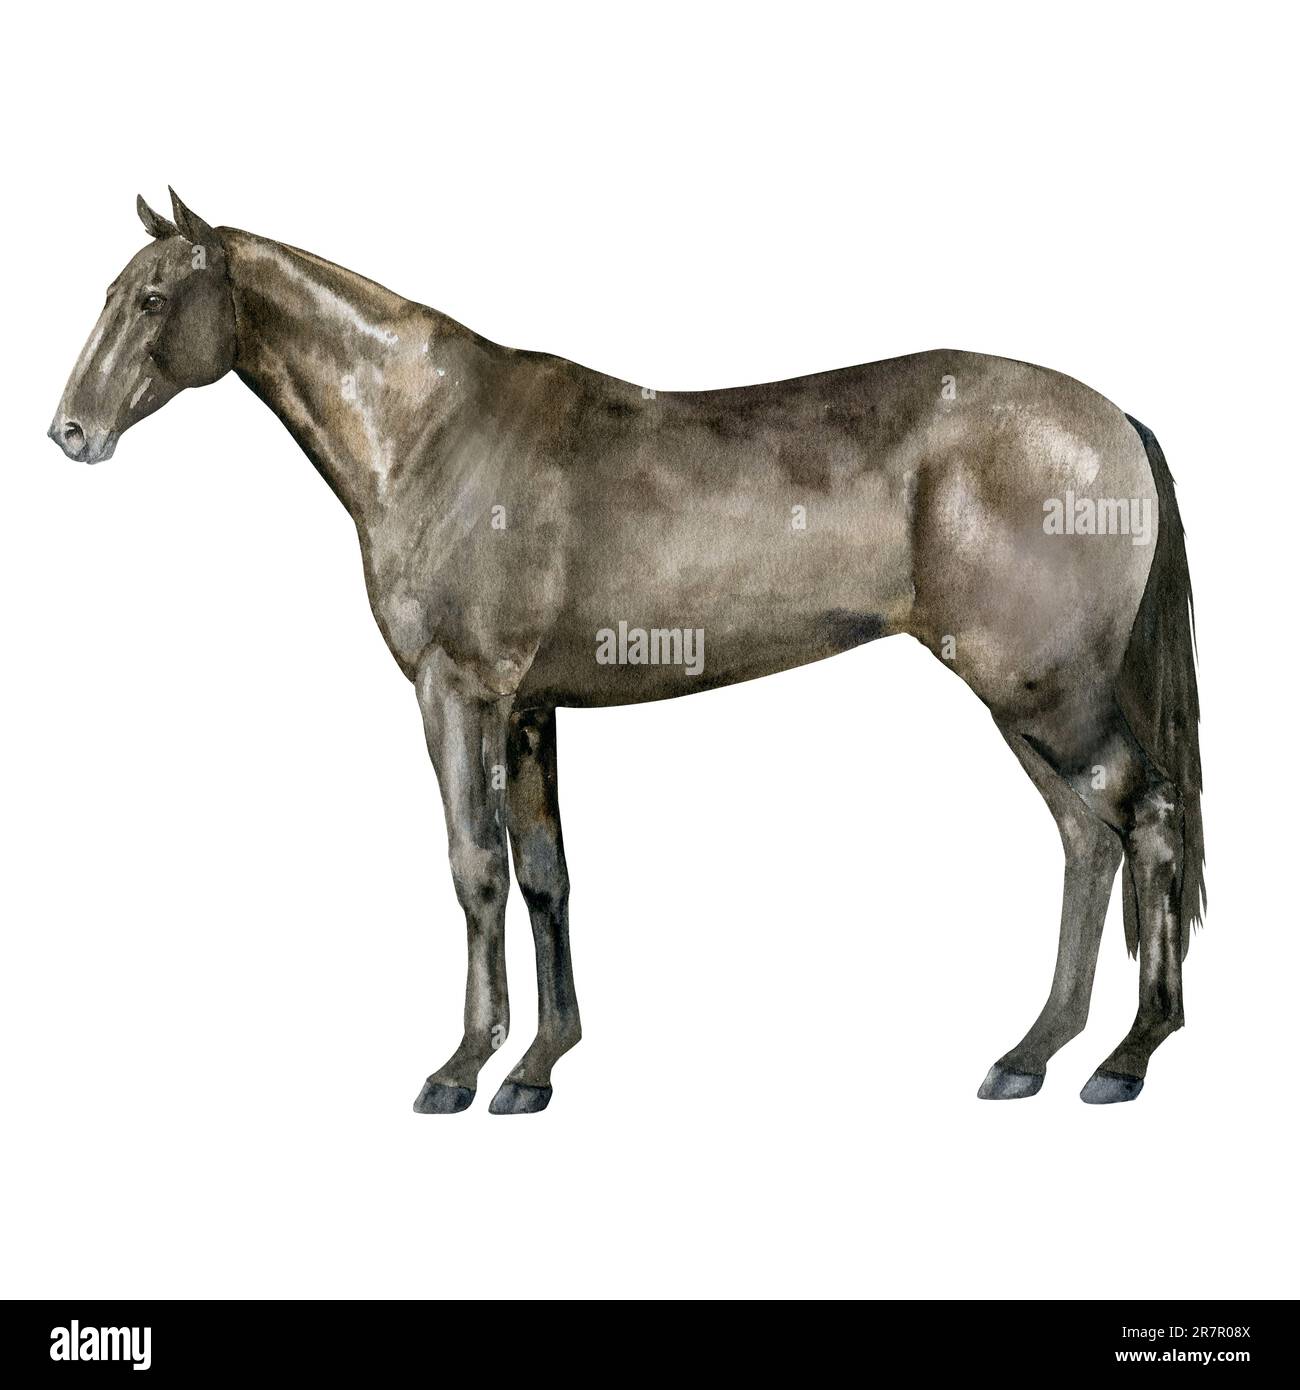 Illustration aquarelle d'un cheval de la baie de Thoroughbred debout en anglais. Isolé. Pour des tirages sur le thème de l'équitation, des sports équestres, des courses hippiques Banque D'Images